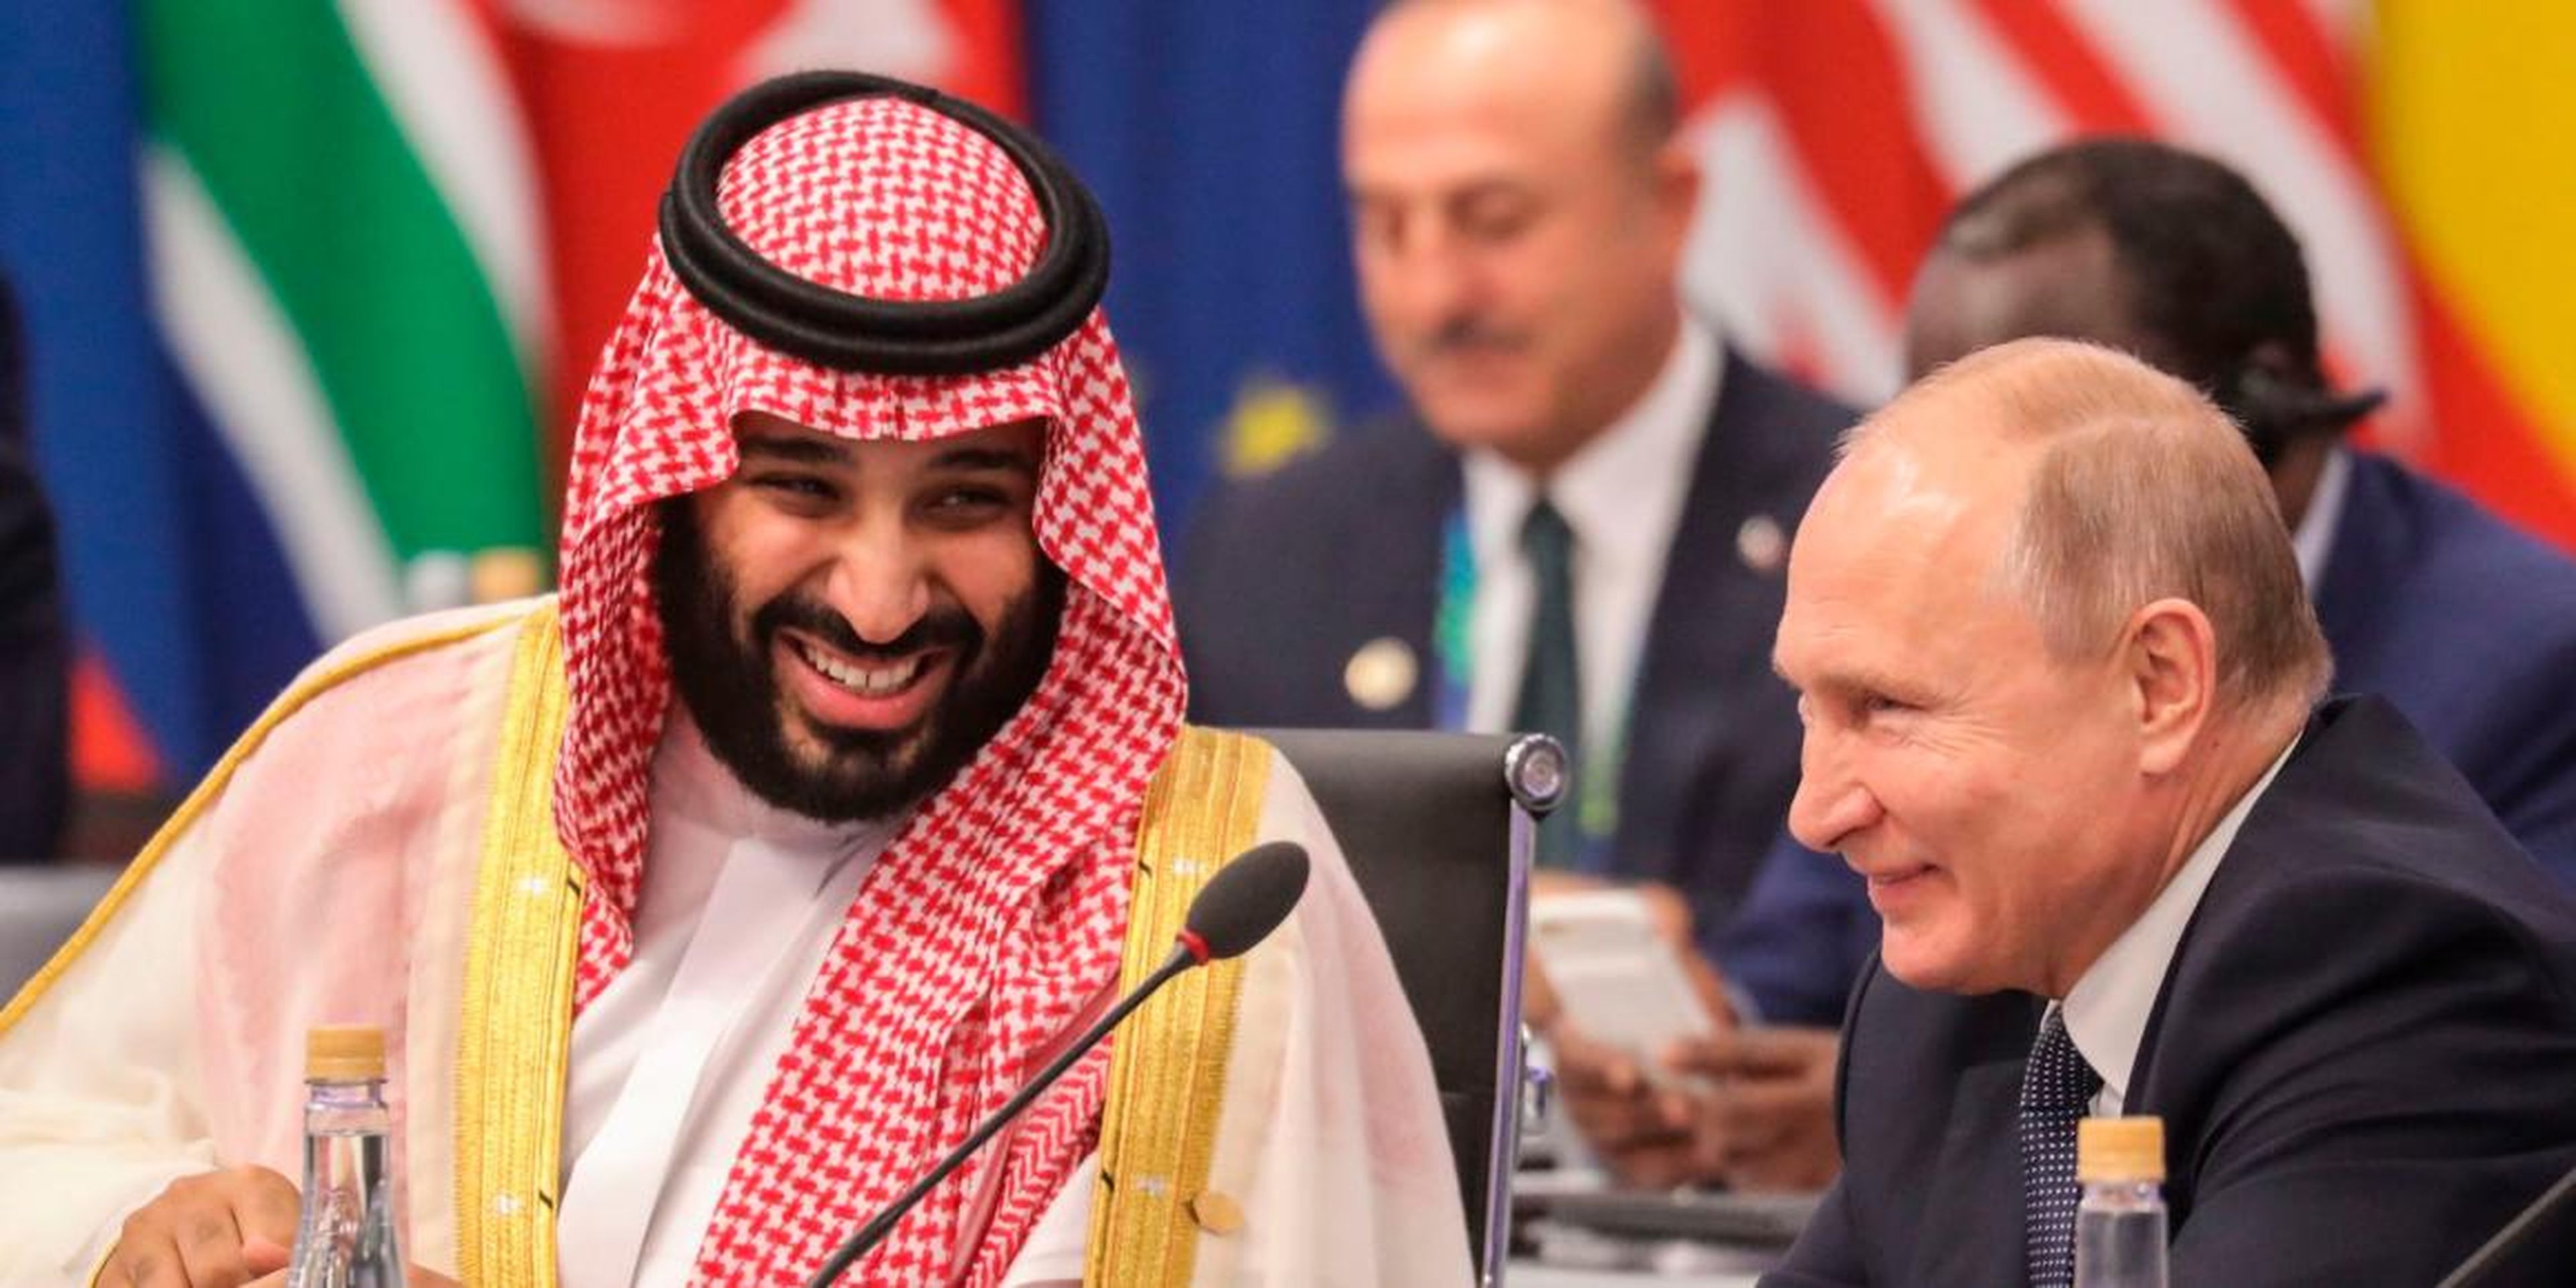 El presidente ruso Vladimir Putin y el príncipe heredero de Arabia Saudita Mohammed bin Salman asisten a la Cumbre de Líderes del G20 en Buenos Aires en noviembre de 2018.